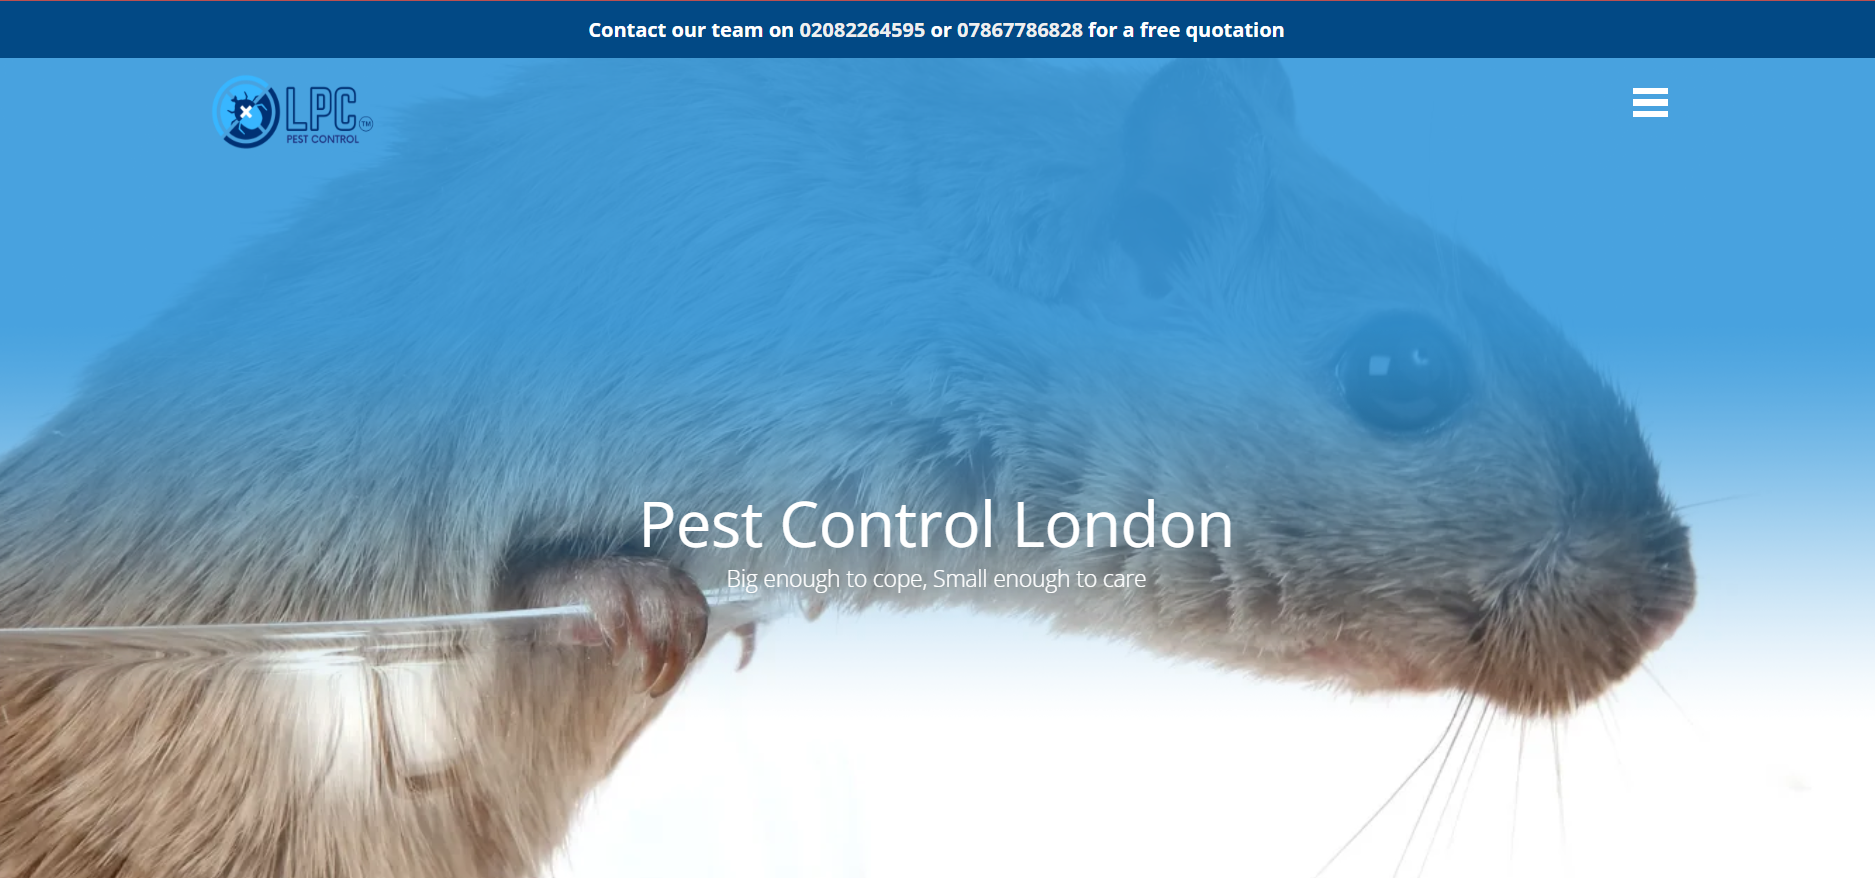 LPC Pest Control Services